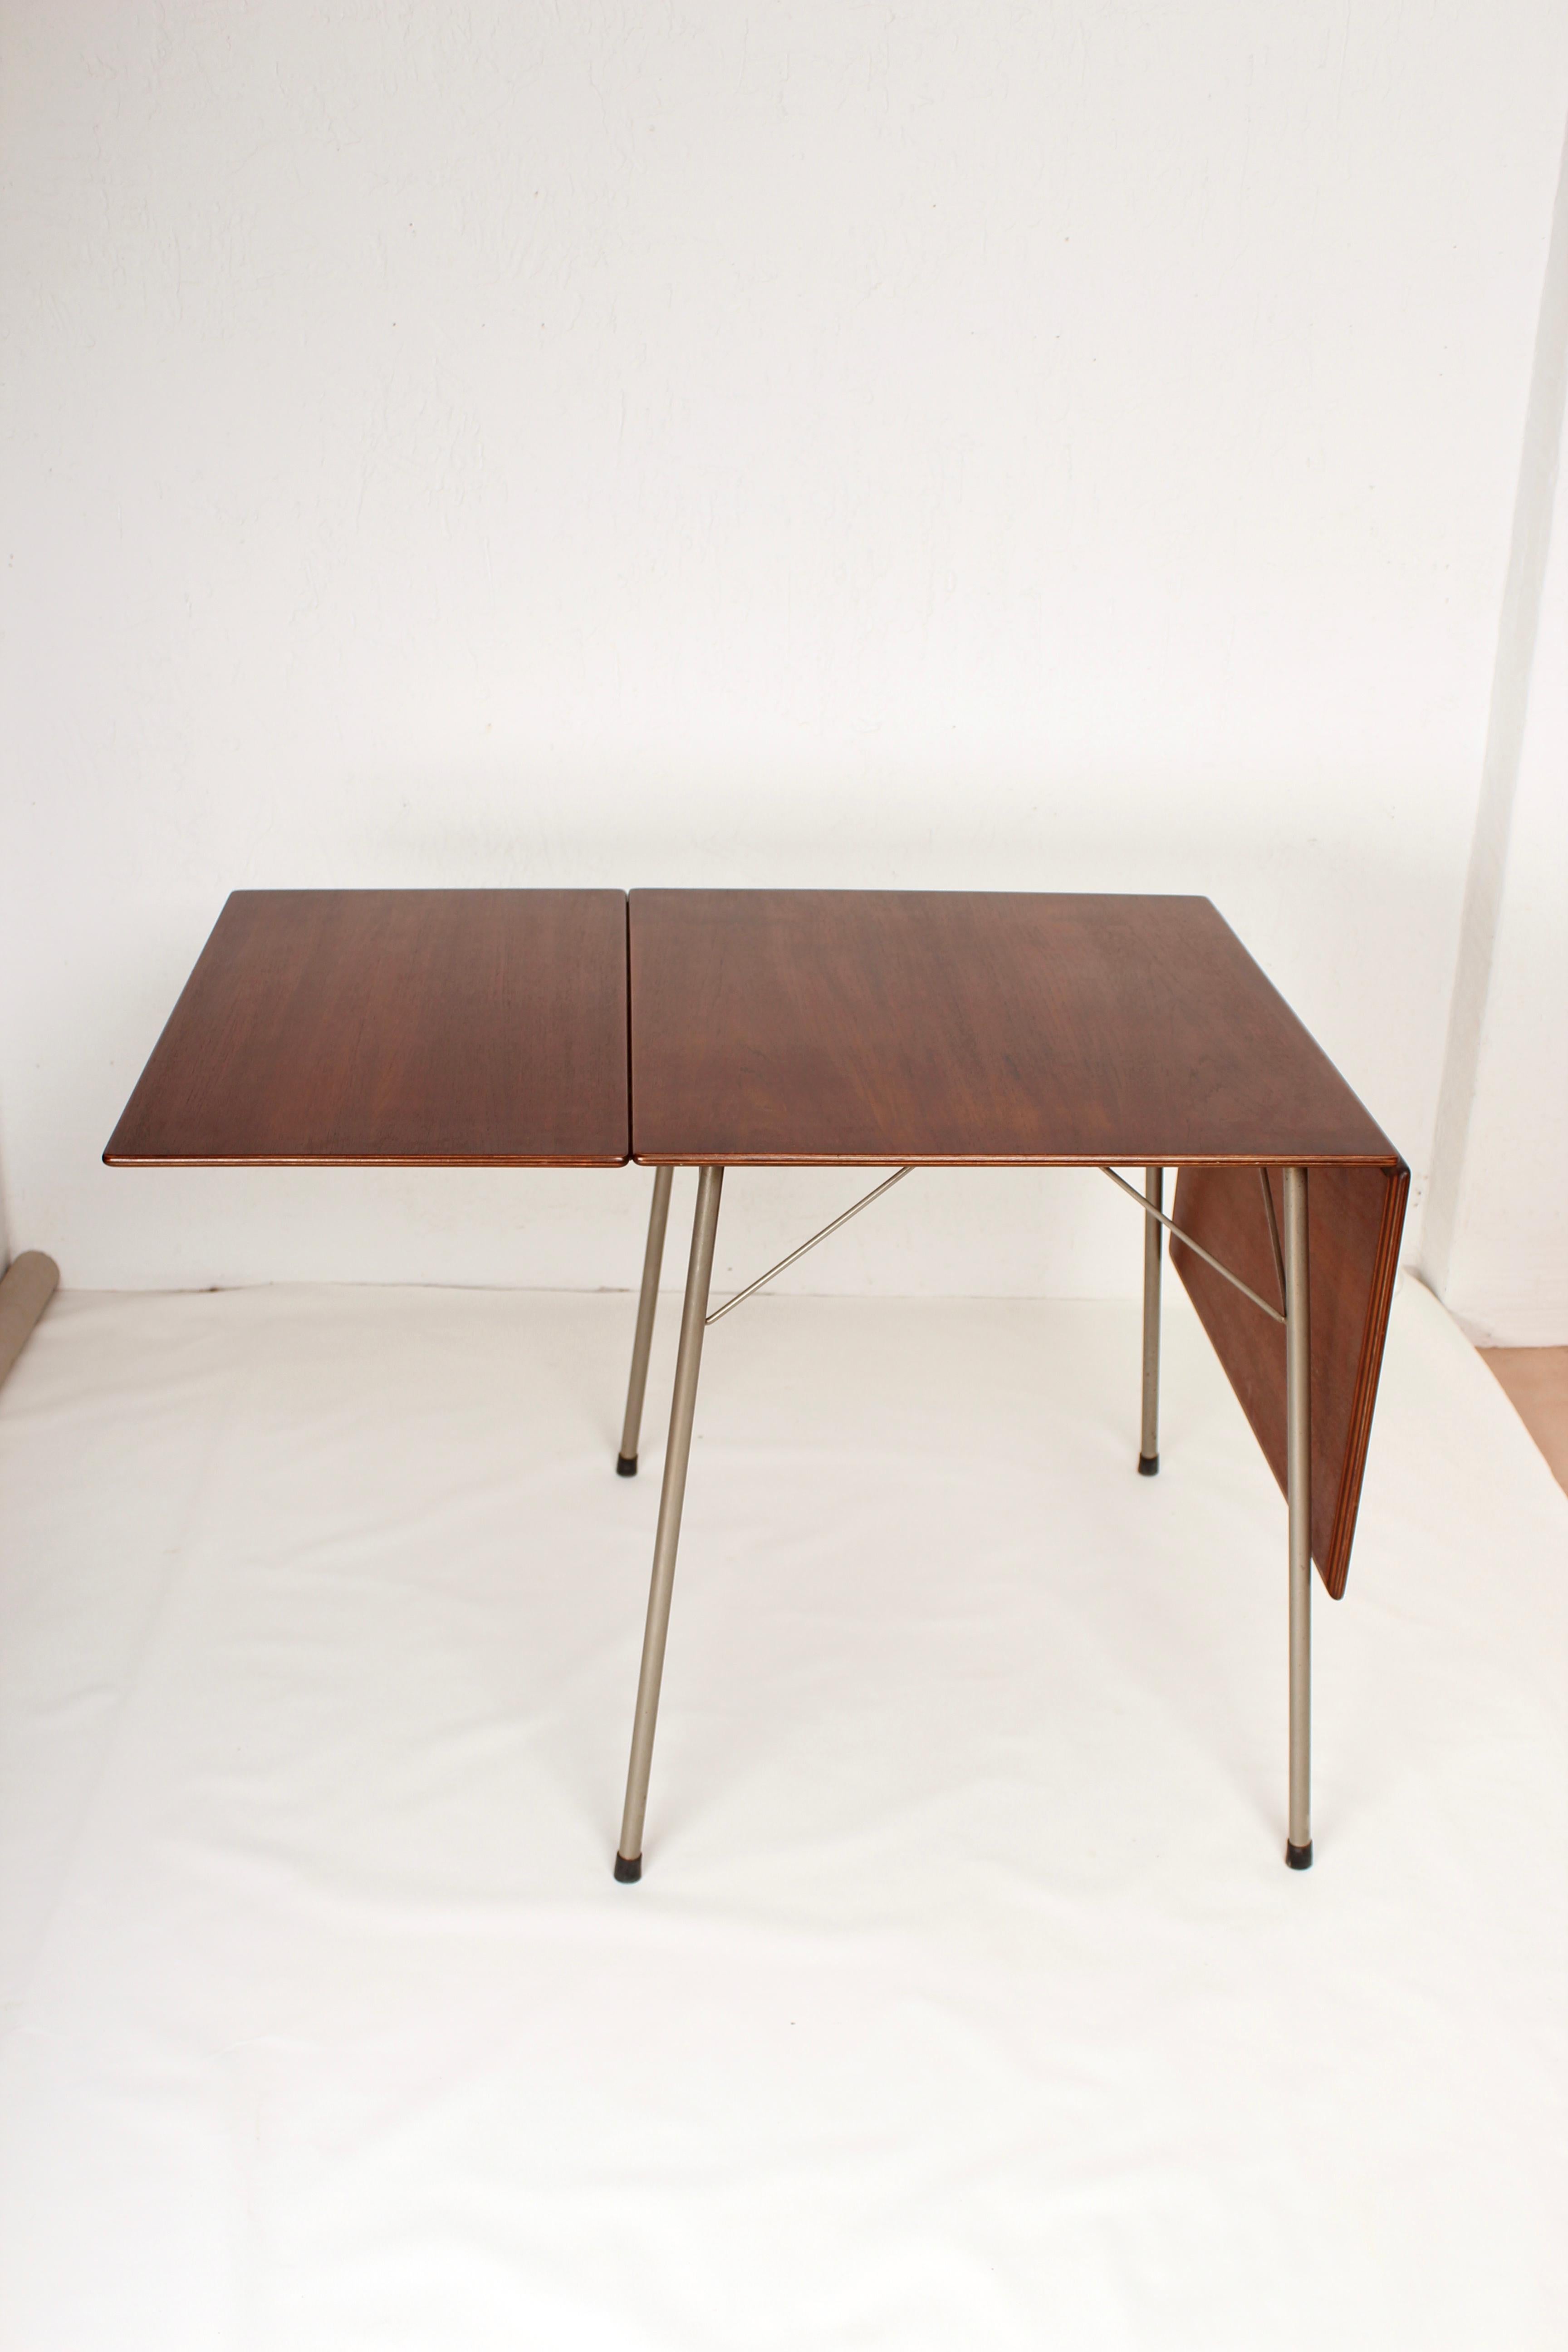 Danish Folding Dining Table by Arne Jacobsen for Fritz Hansen Model 3601, 1950s 5